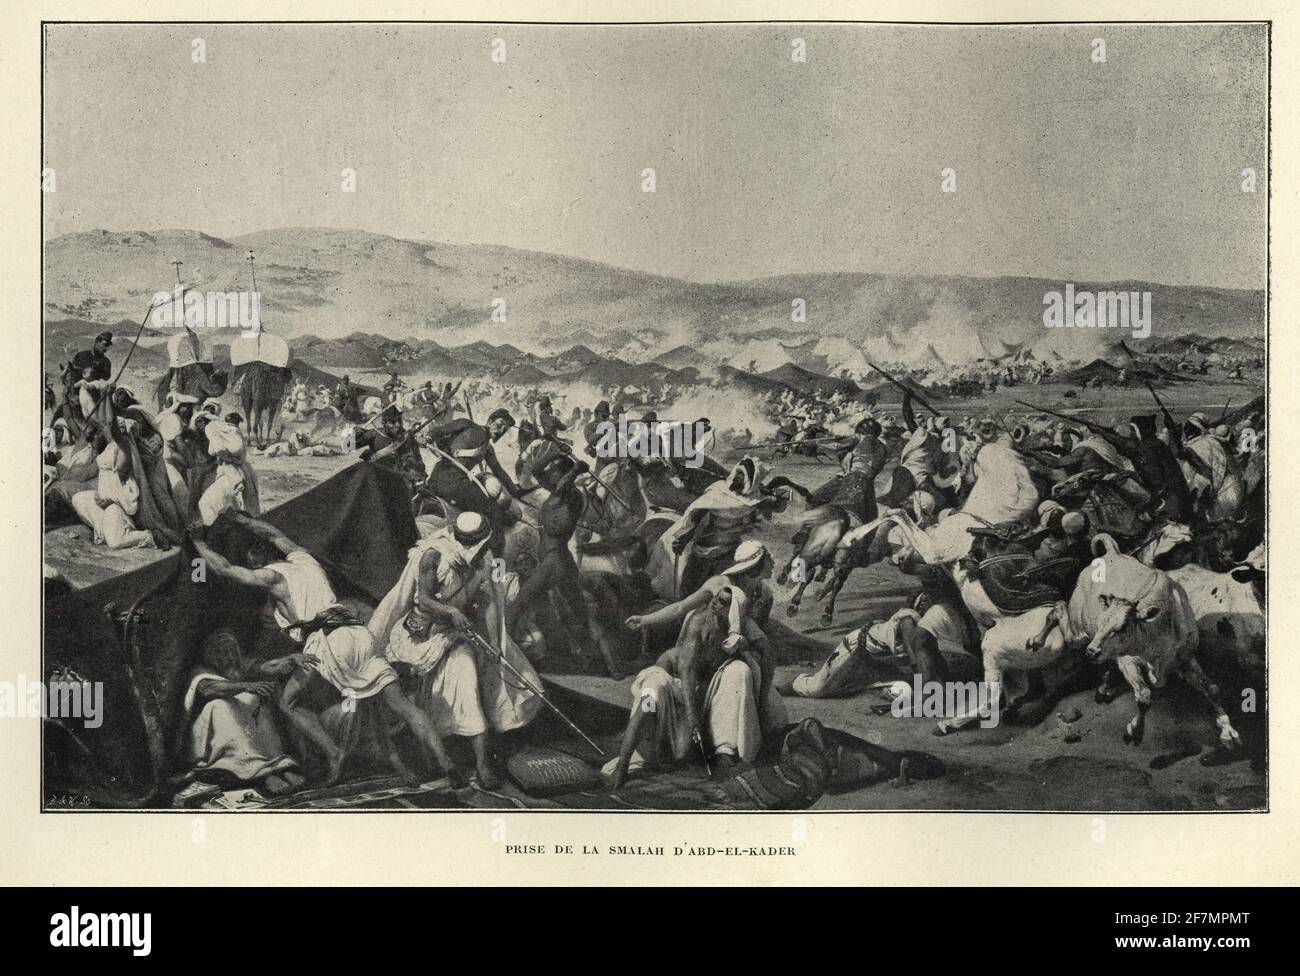 La battaglia dello Smala fu combattuta nel 1843 tra la Francia e i combattenti algerini durante la conquista francese dell'Algeria. Foto Stock